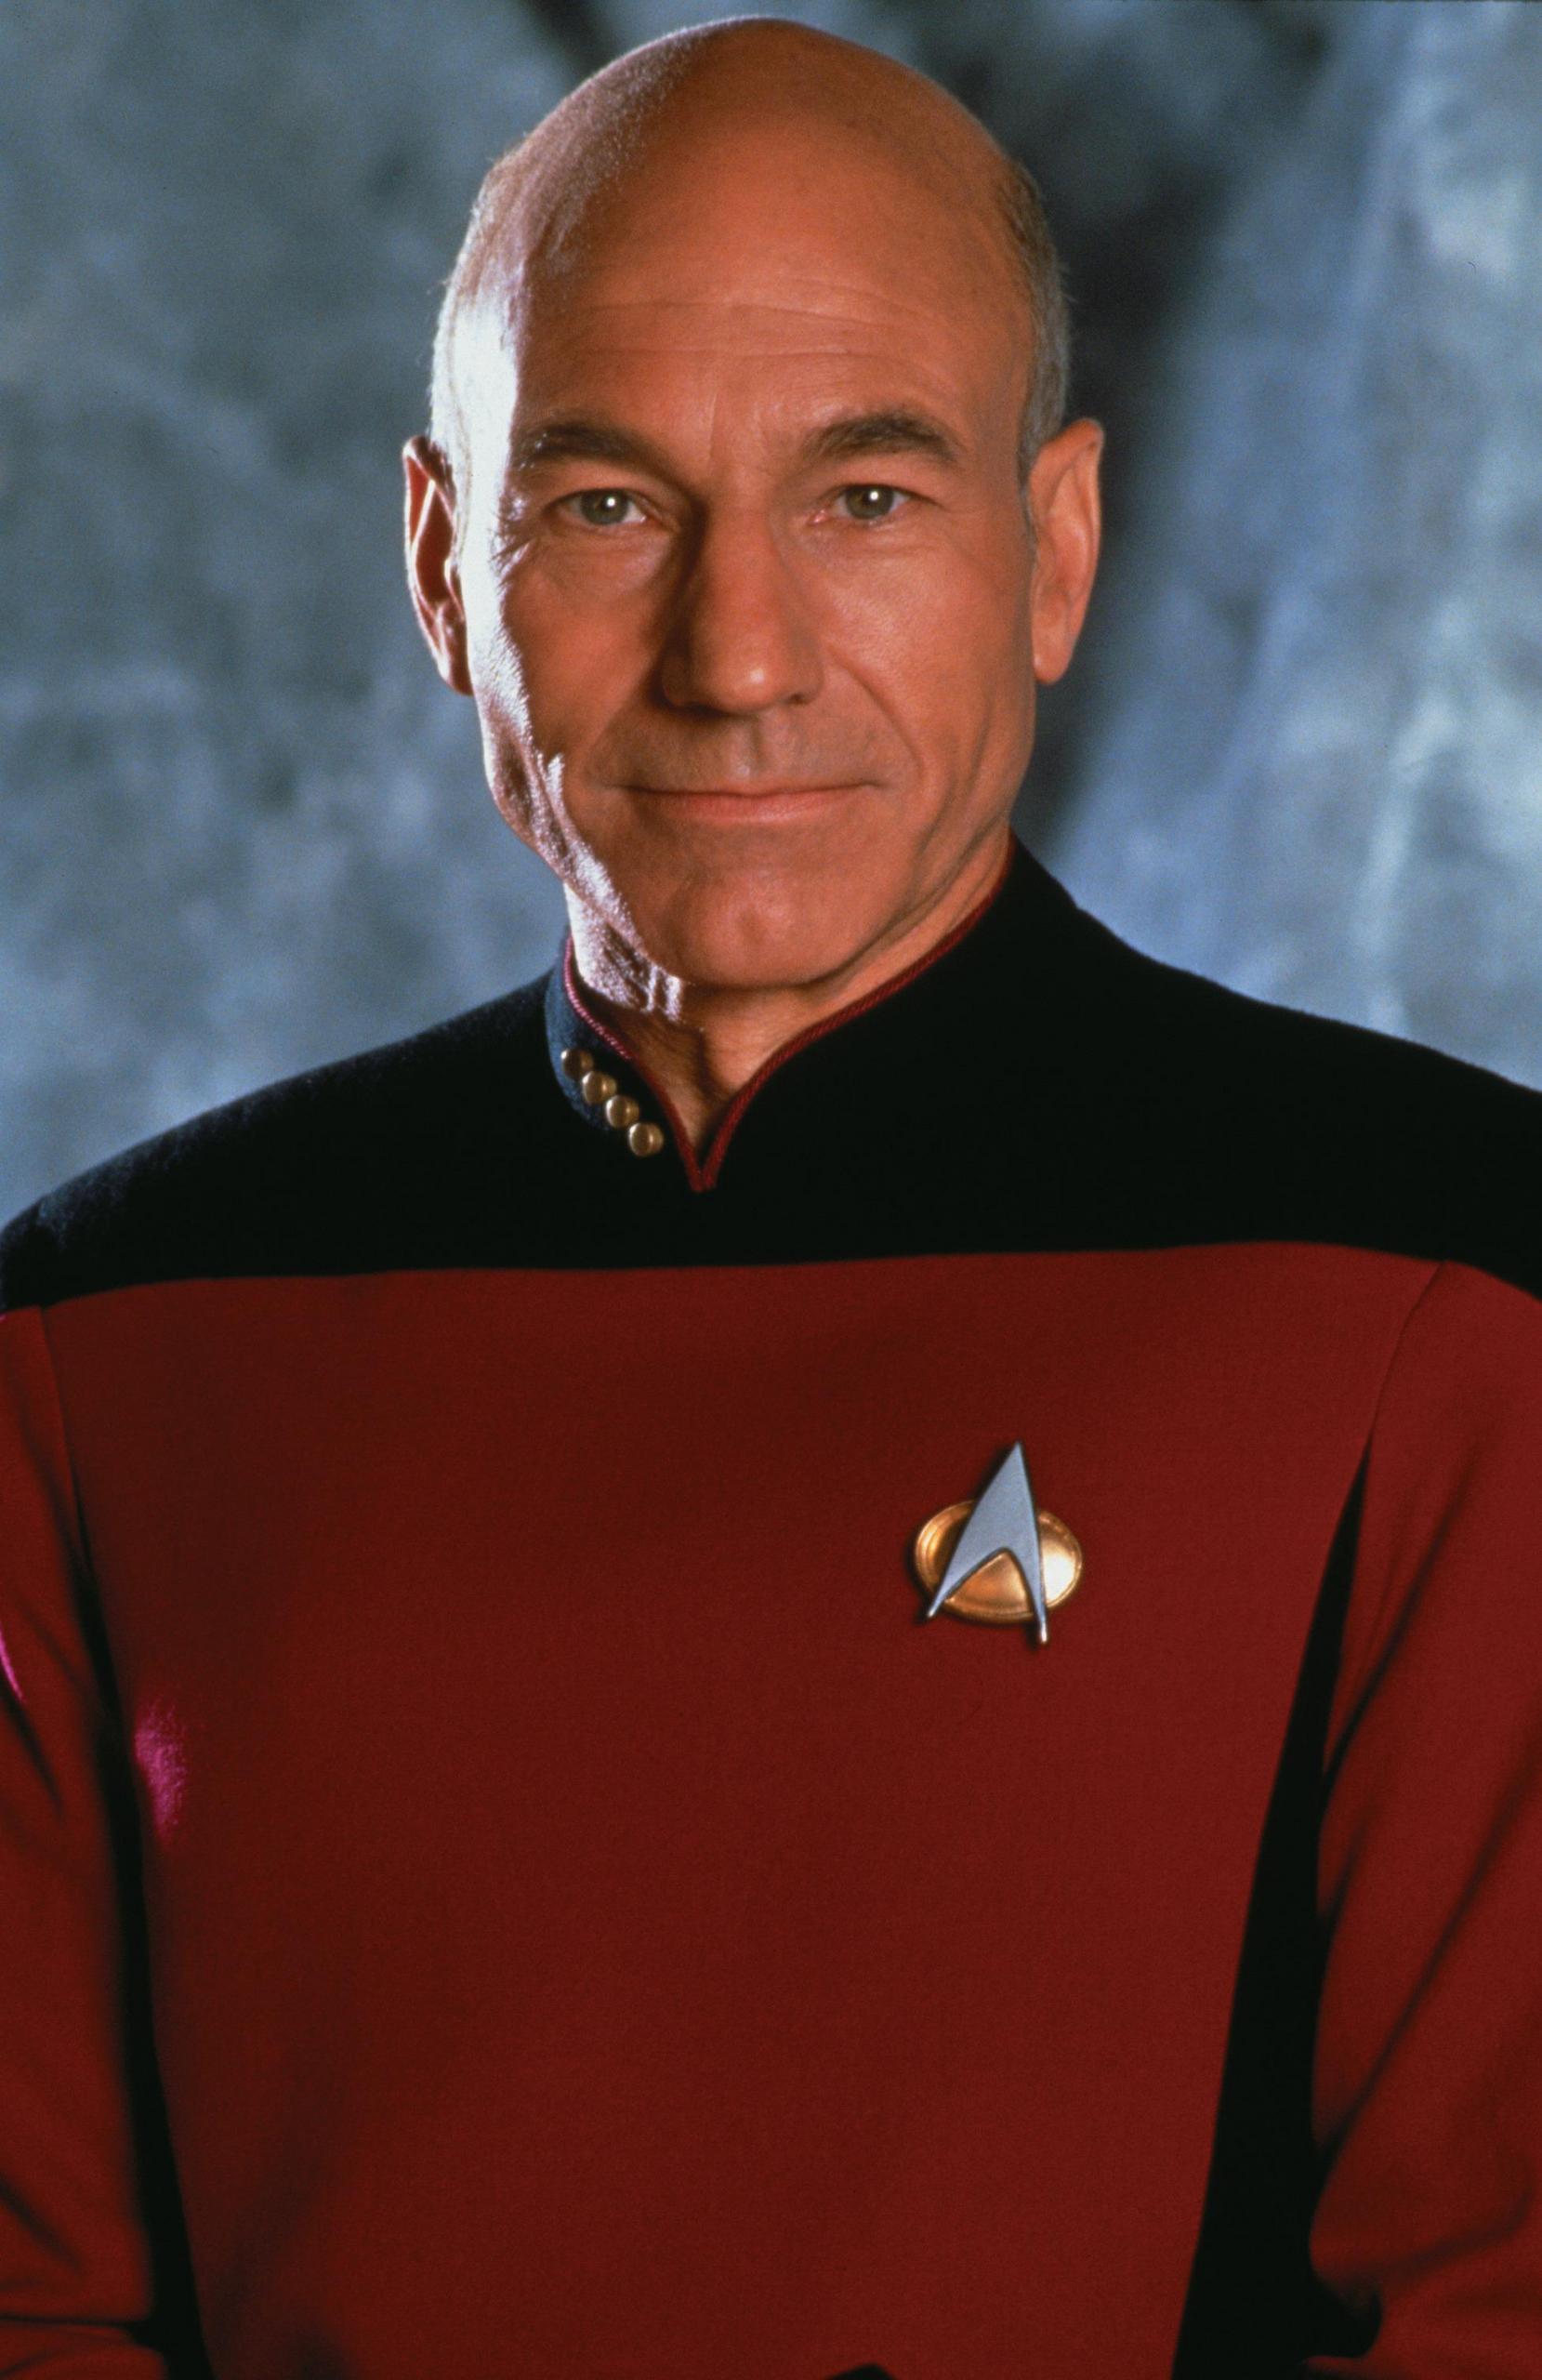 Picard Make It So